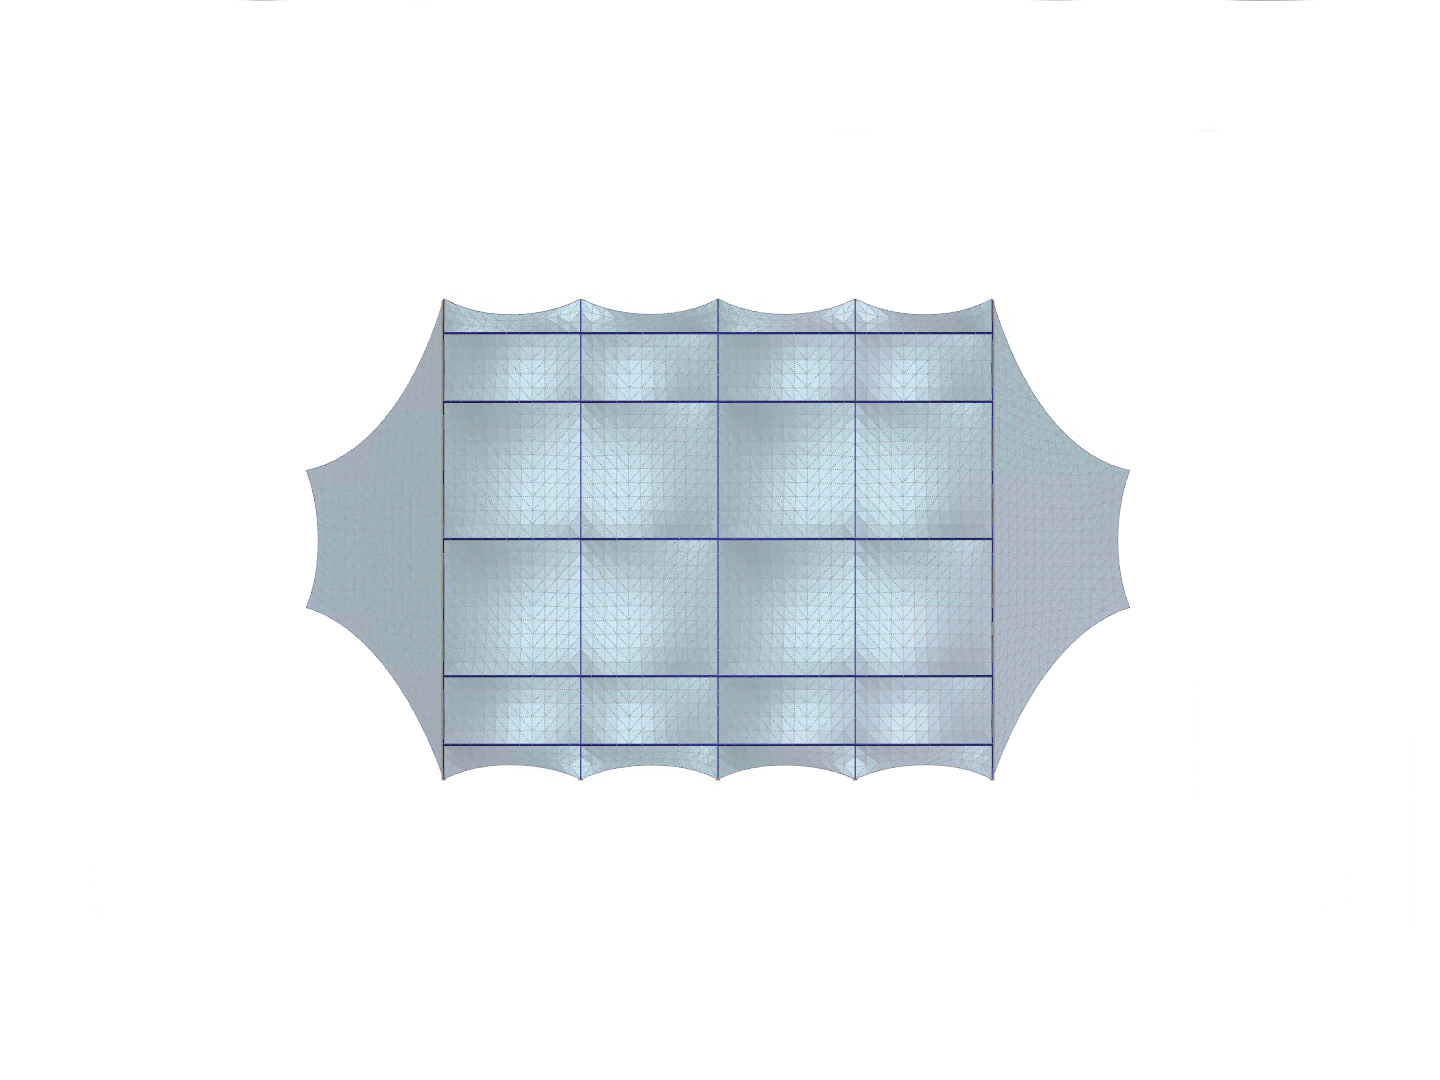 Halle avec toiture à membrane, vue en direction de l'axe Z